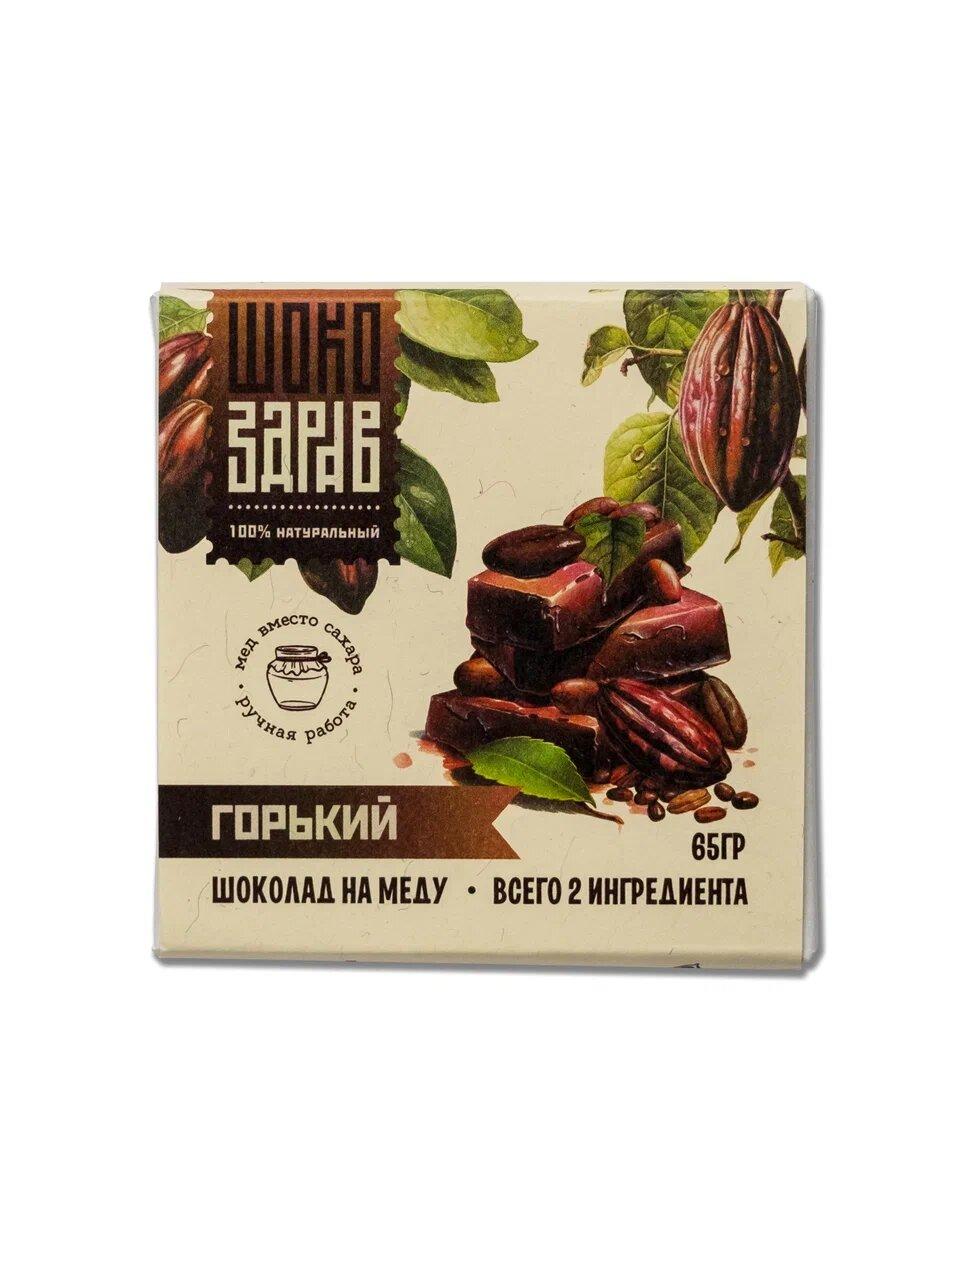 Шоколад ШокоЗдрав на меду ручной работы Горький 65 гр., картон